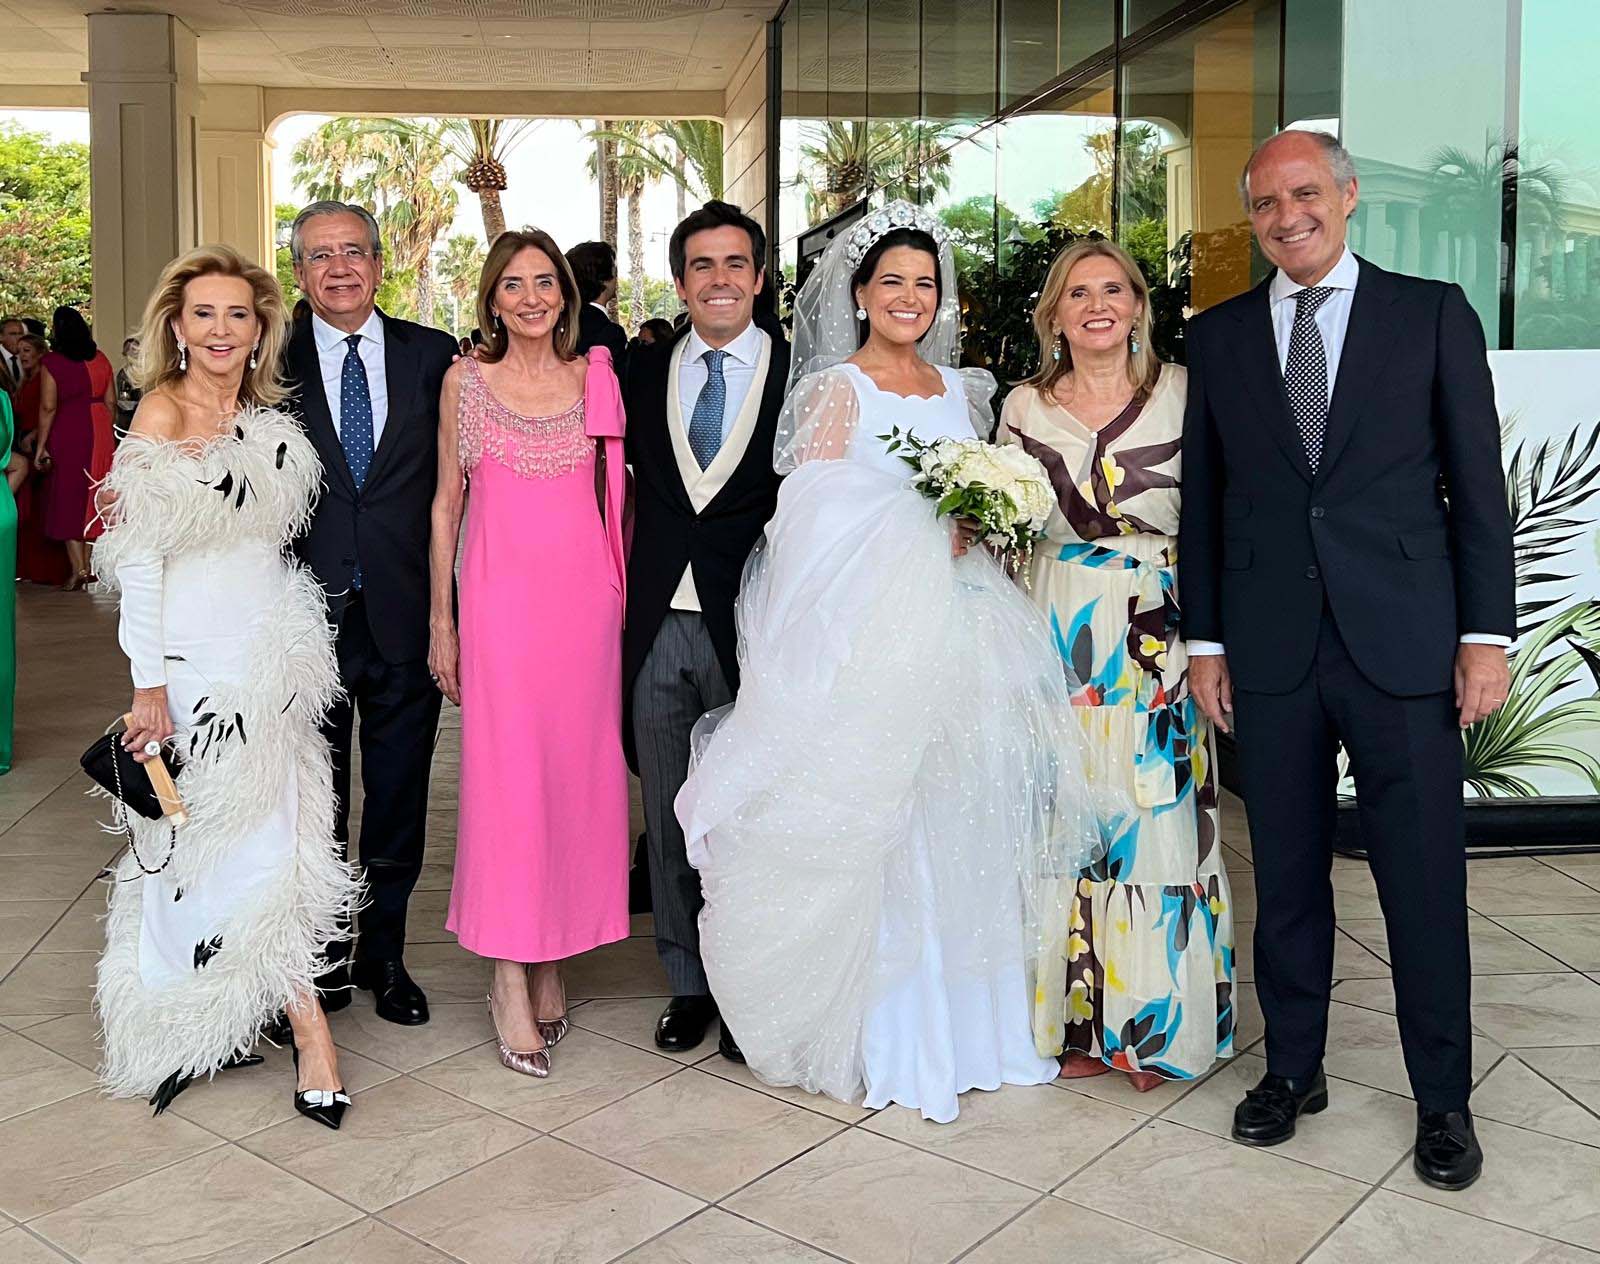 Mayrén Beneyto, Vicente Garrido, Montse Valls, Esteban Rivas, Natalia Yanes, Isabel Bas y Francisco Camps.